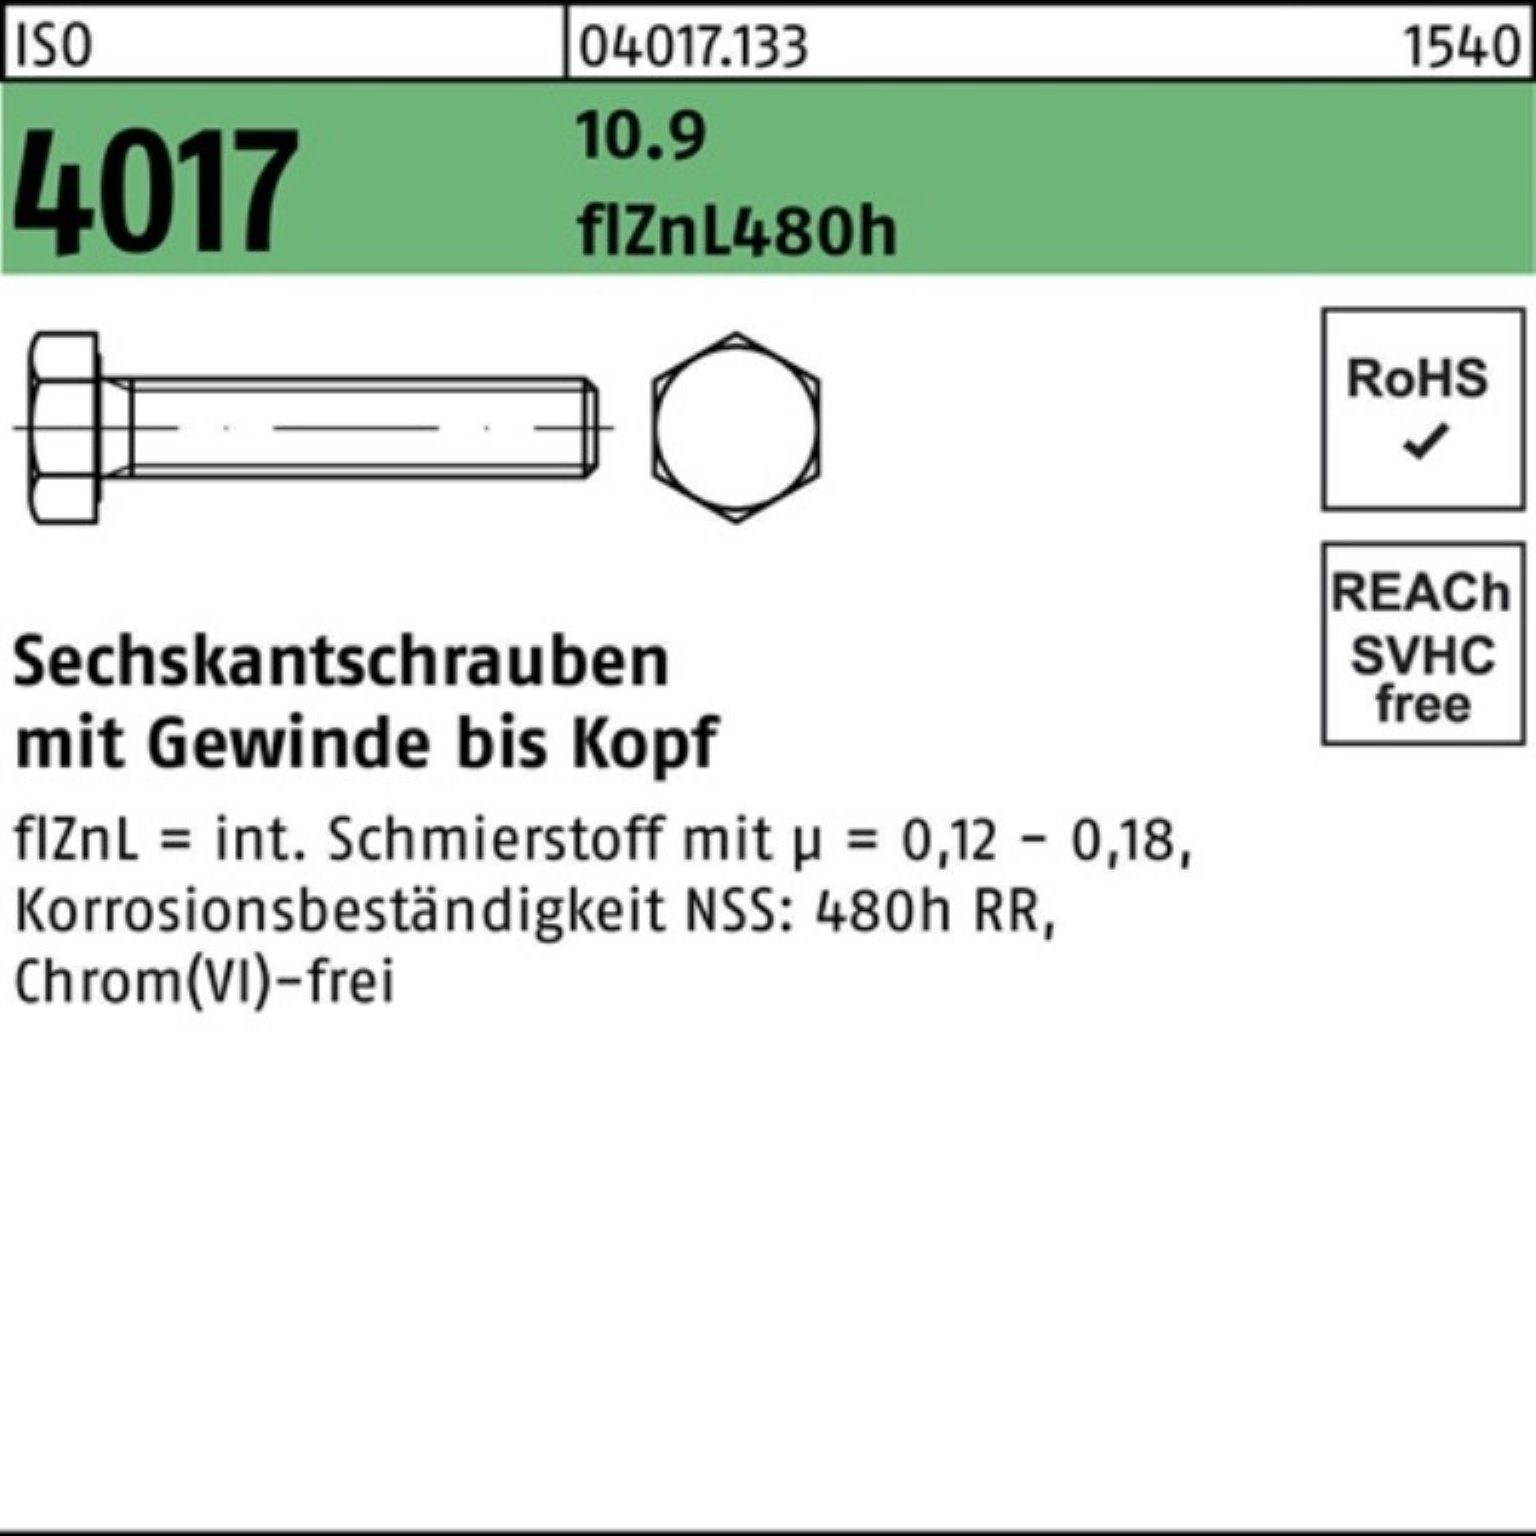 VG Sechskantschraube 2 100er Pack 4017 Sechskantschraube M24x Bufab zinklamellenb. ISO 50 10.9